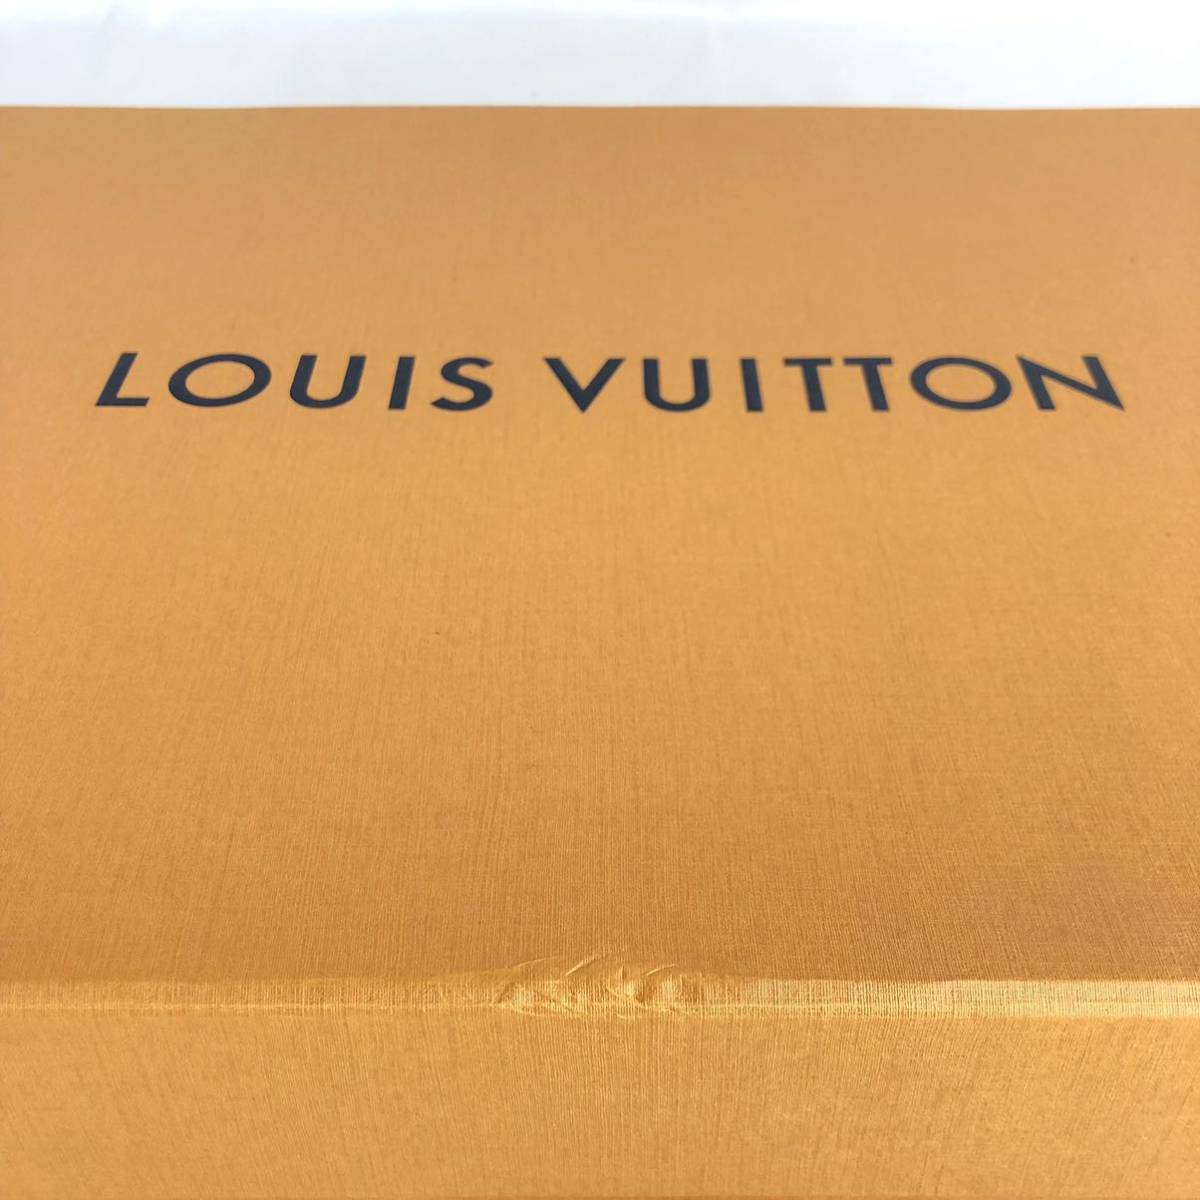 LOUIS VUITTON ルイヴィトン 空箱 まとめ 4箱 大型 収納ケース オレンジBOX 空き箱 箱_画像8